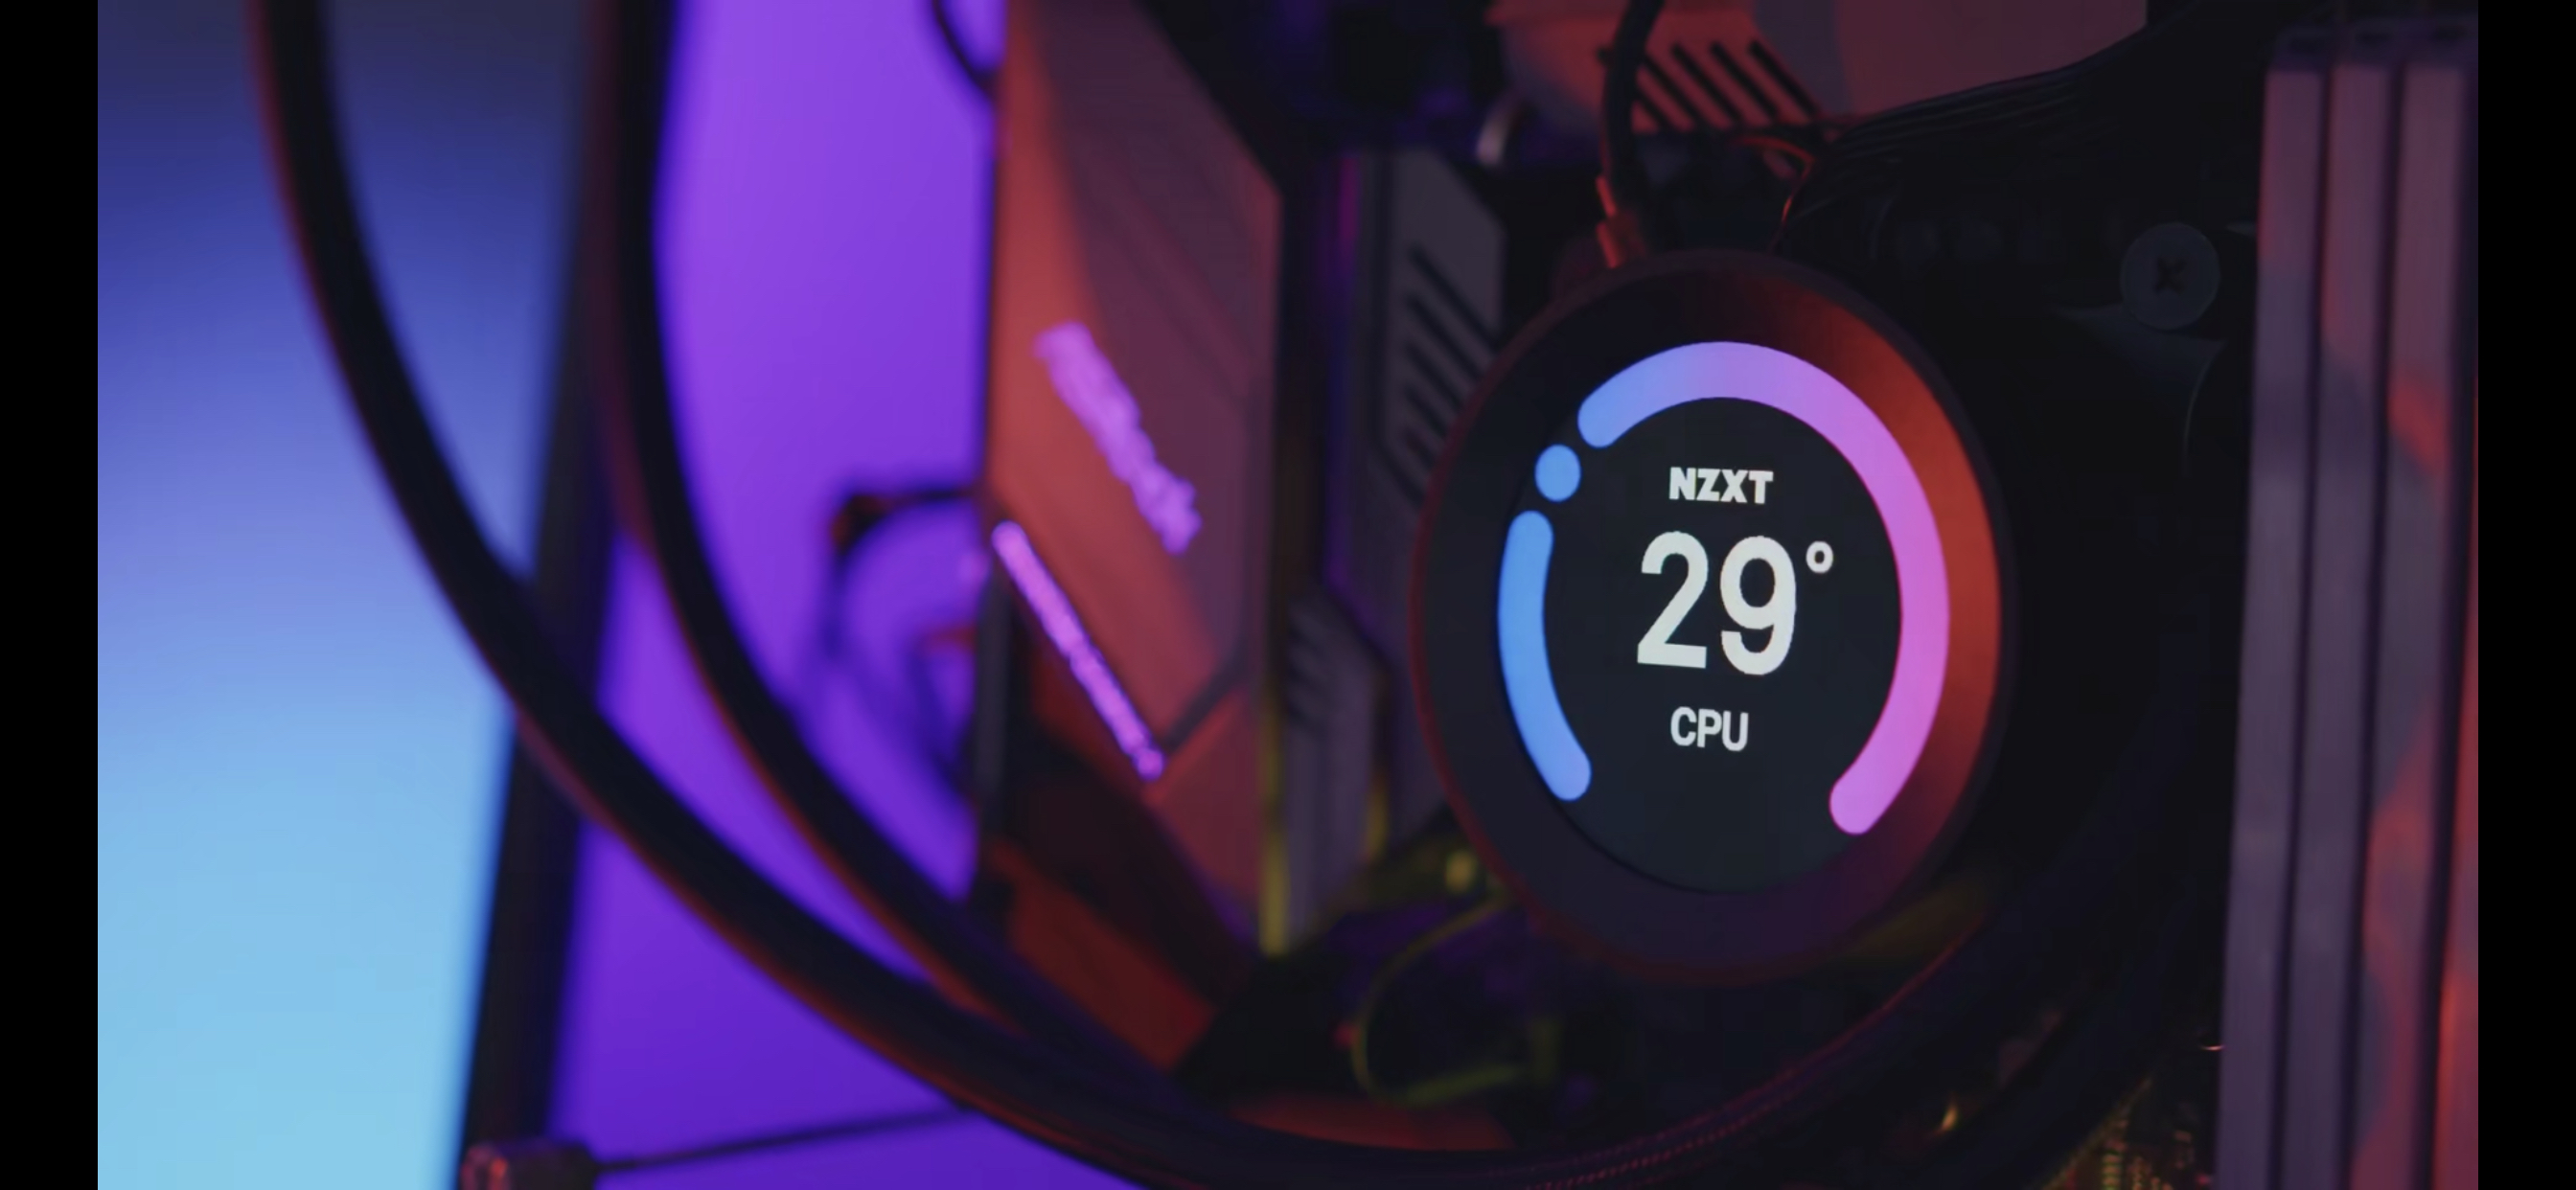 冷头看片就在今日 Nzxt发布全新kraken Z系列cpu水冷散热器nga玩家社区